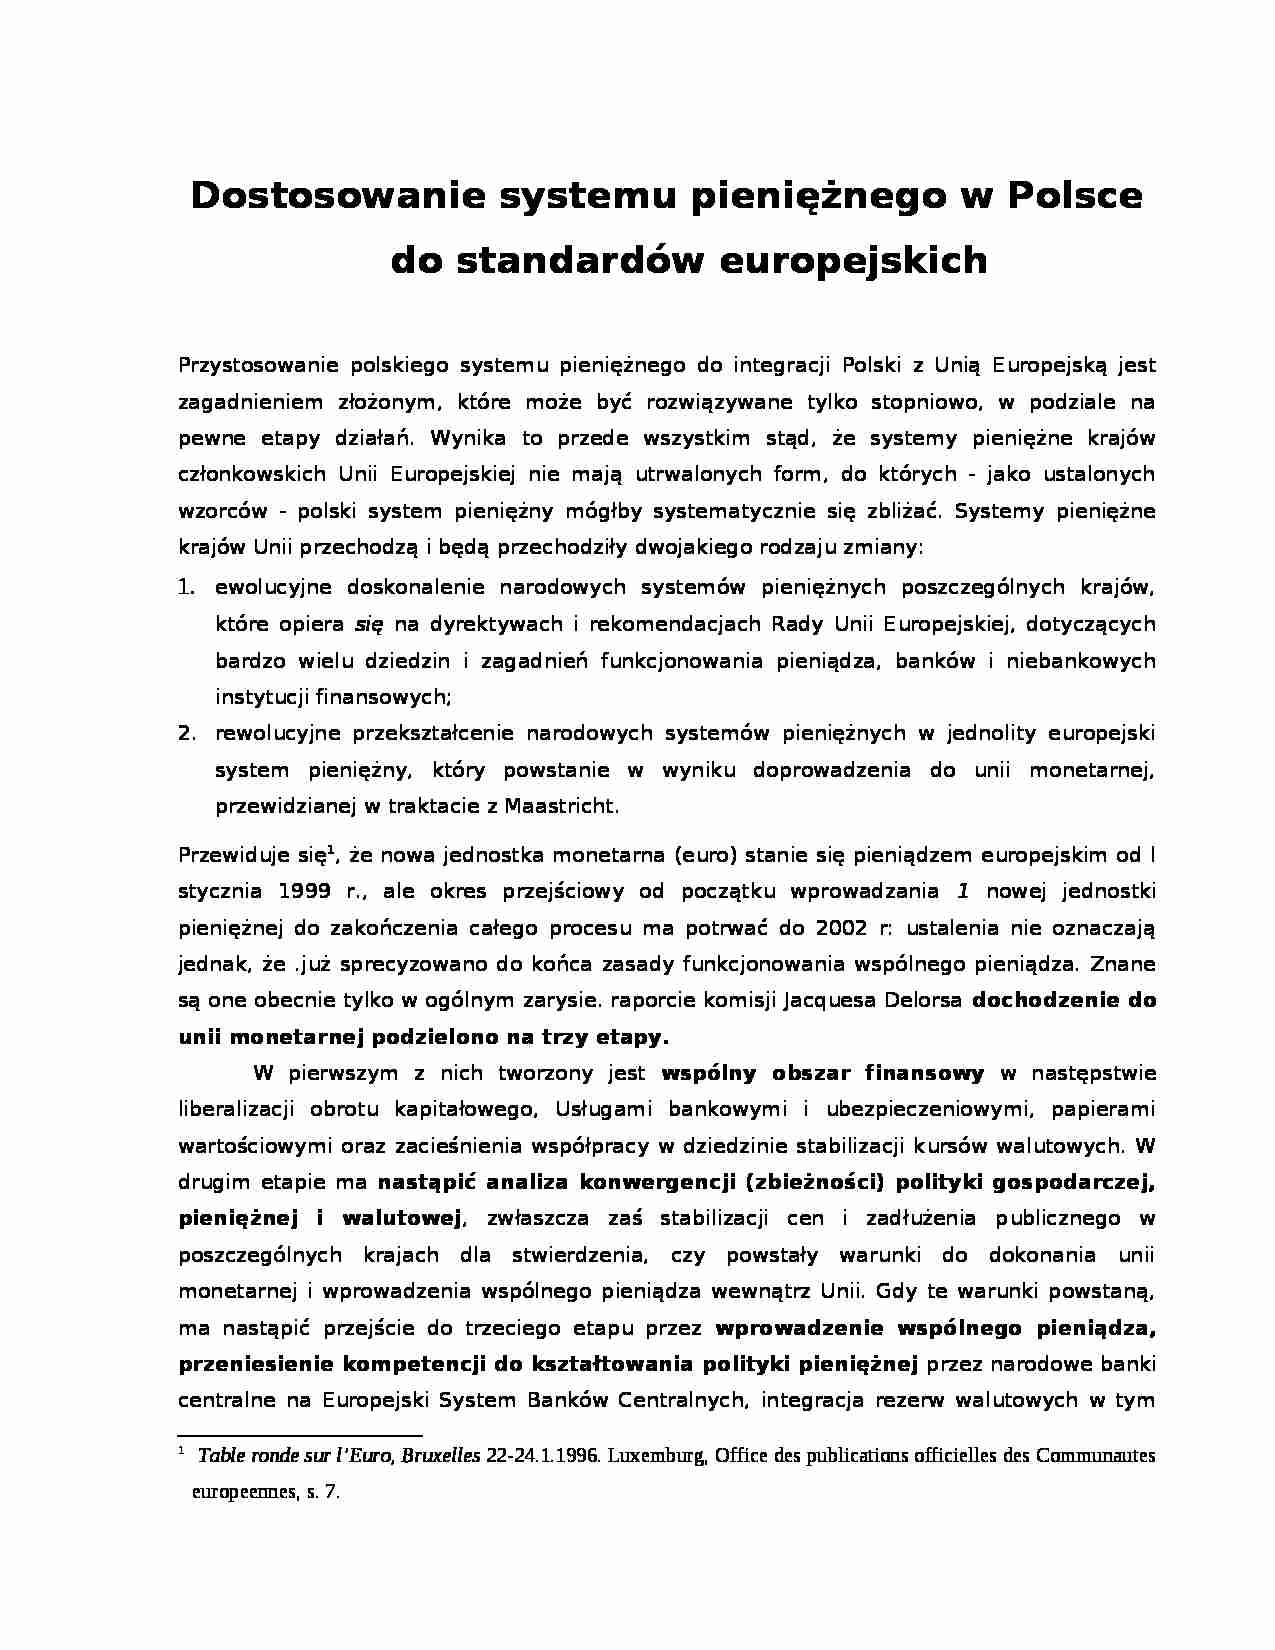 Dostosowanie polskiego systemu pieniężnego -euro - strona 1